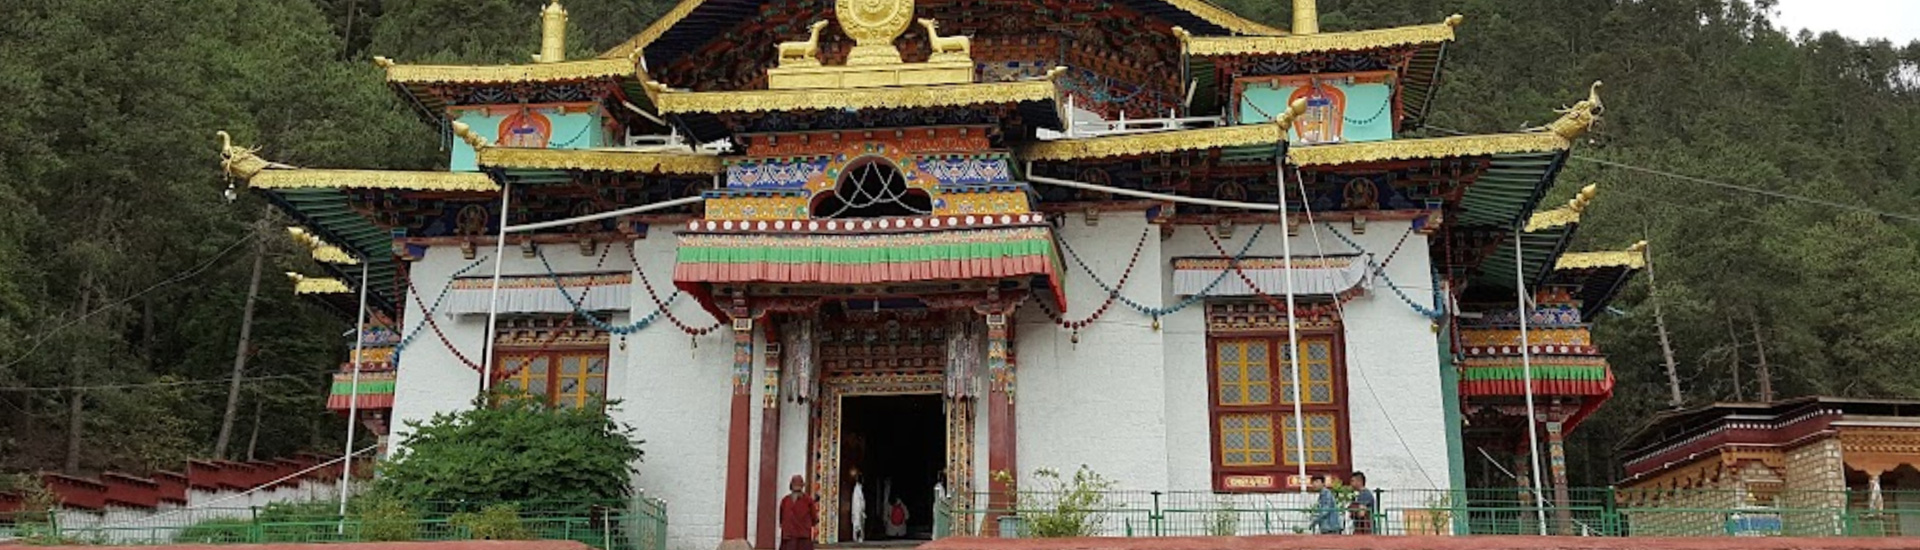 Lamaling Temple